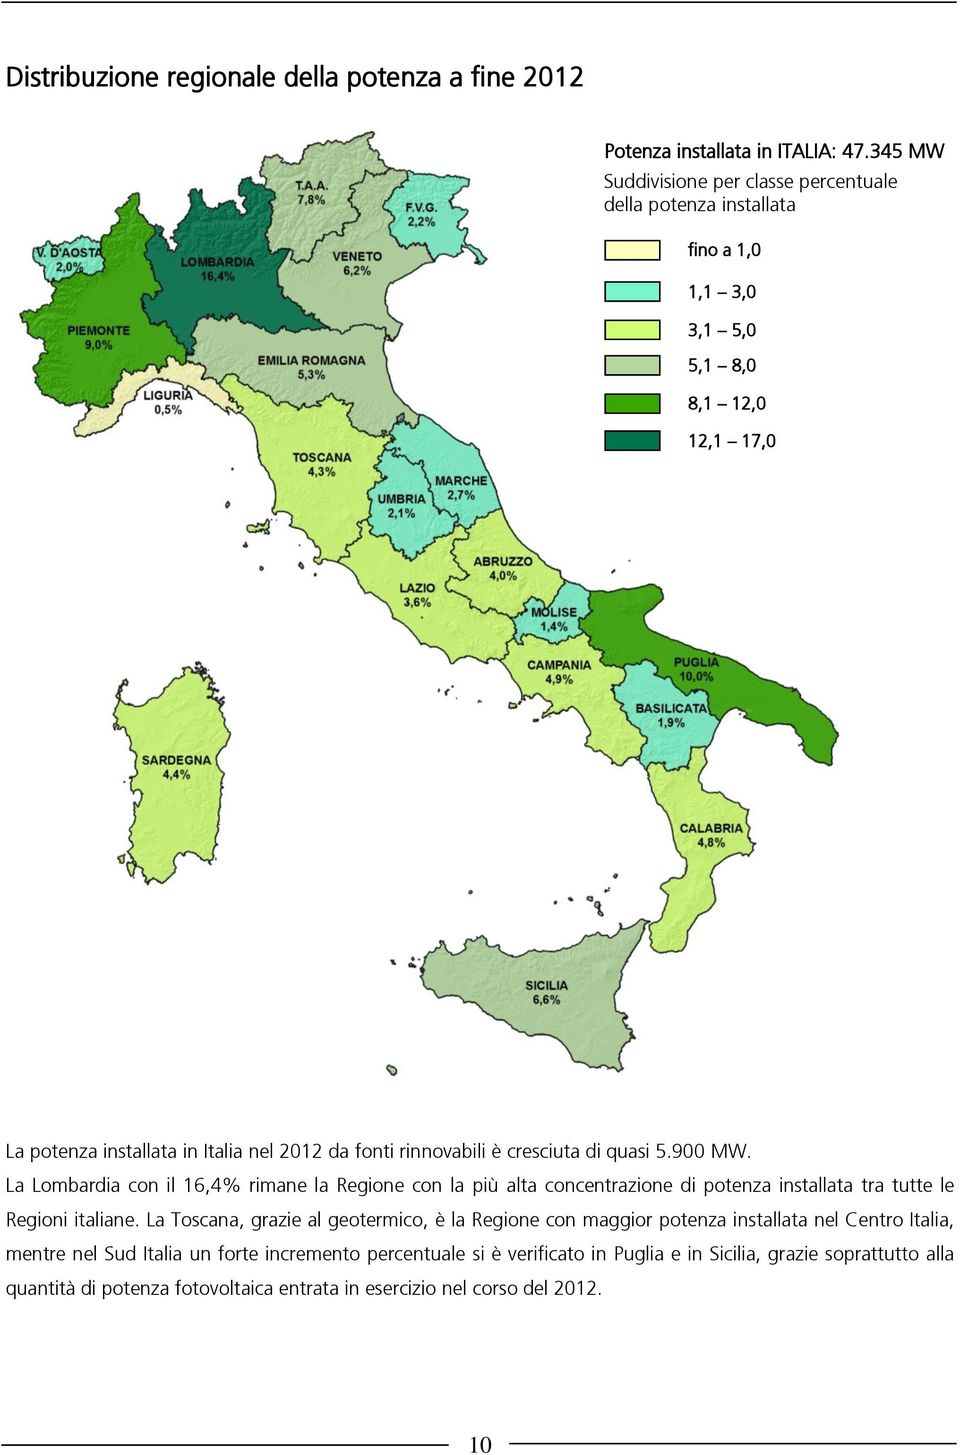 rinnovabili è cresciuta di quasi 5.900 MW. La Lombardia con il 16,4% rimane la Regione con la più alta concentrazione di potenza installata tra tutte le Regioni italiane.